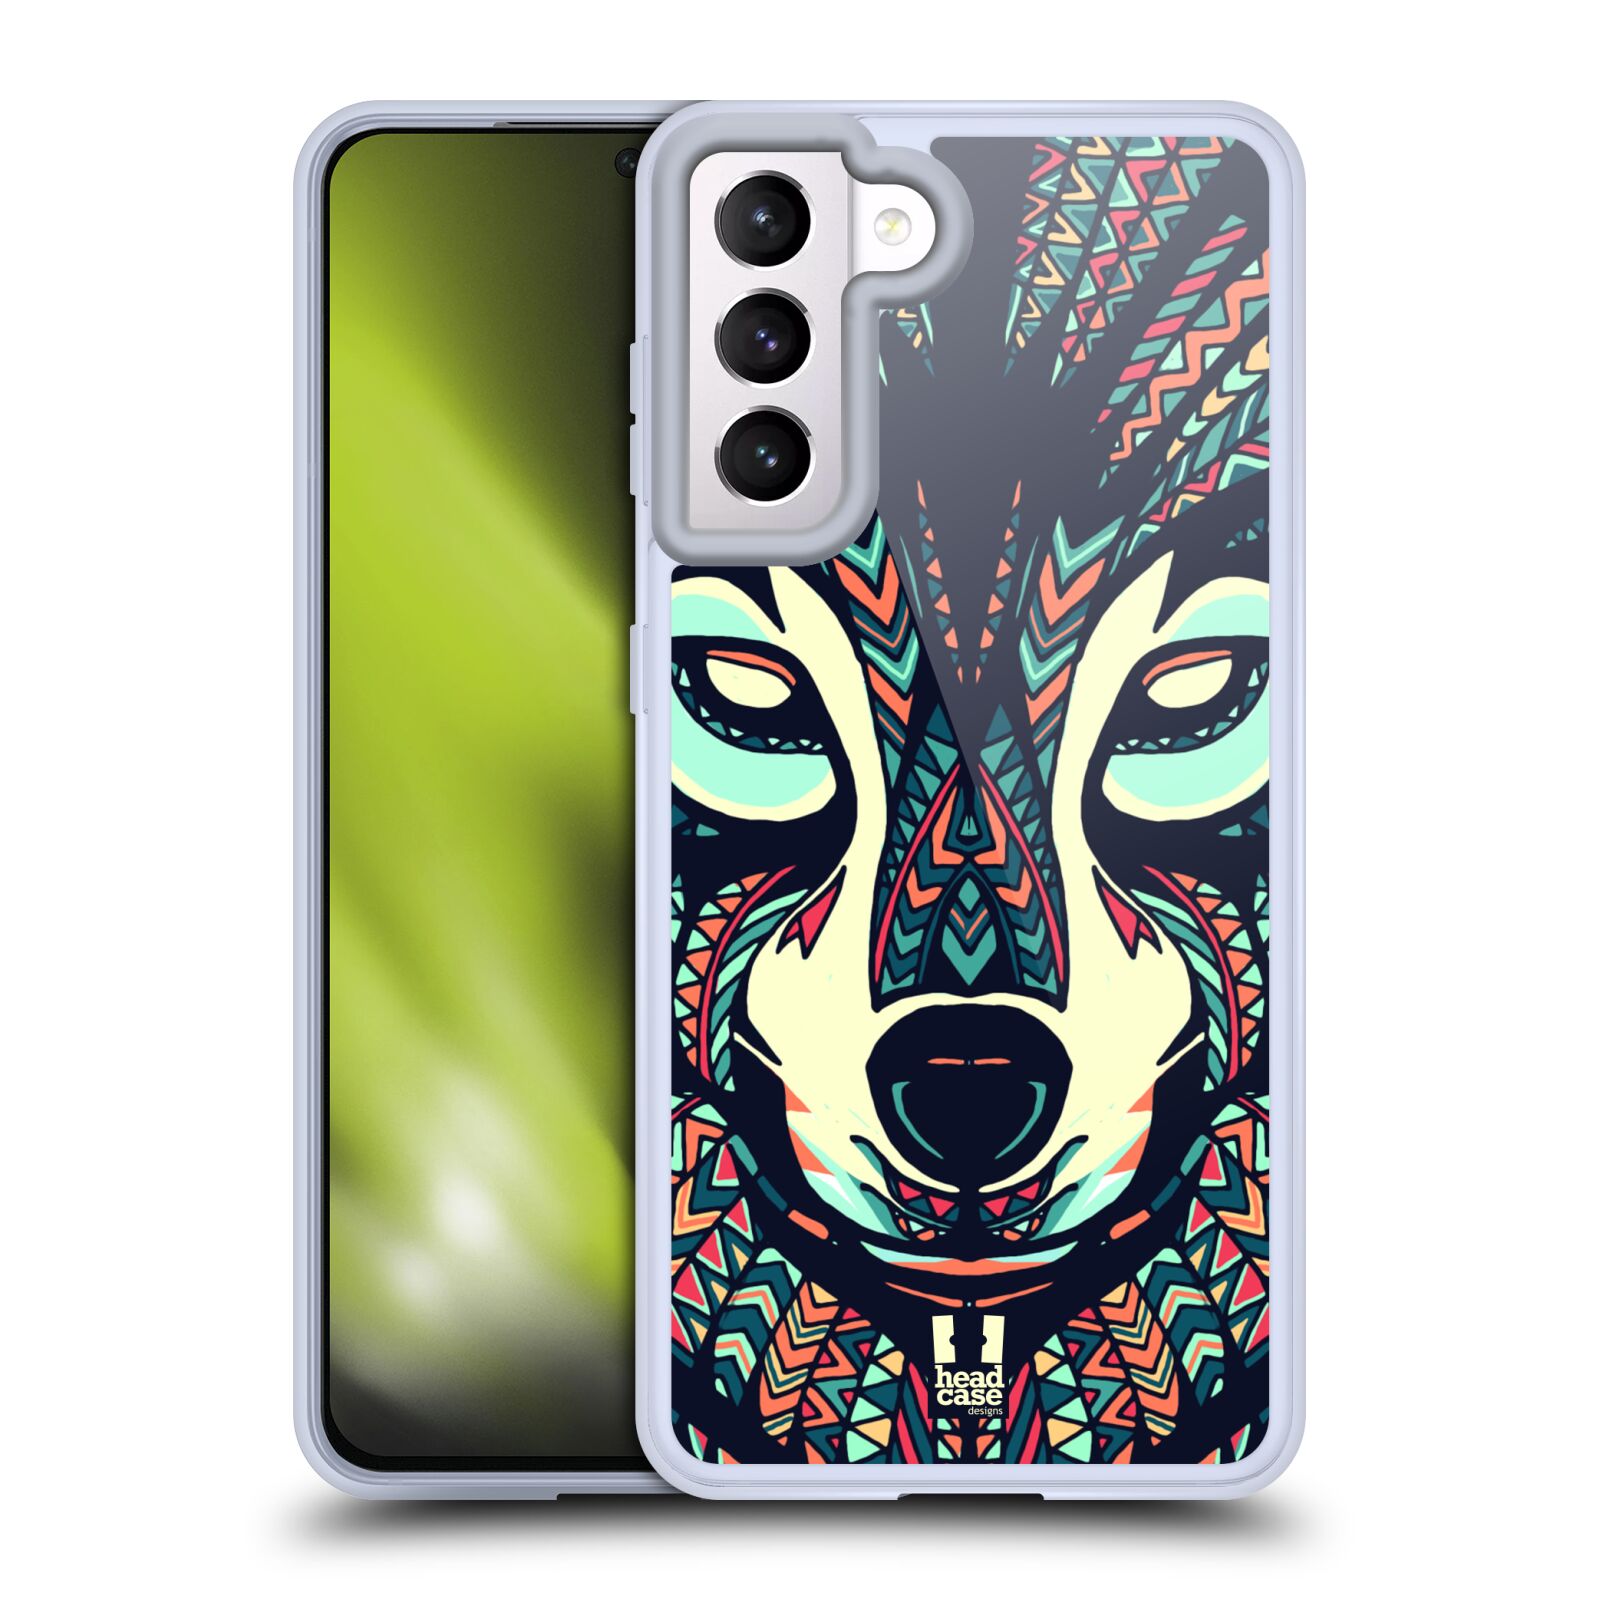 Plastový obal HEAD CASE na mobil Samsung Galaxy S21 5G vzor Aztécký motiv zvíře 3 vlk